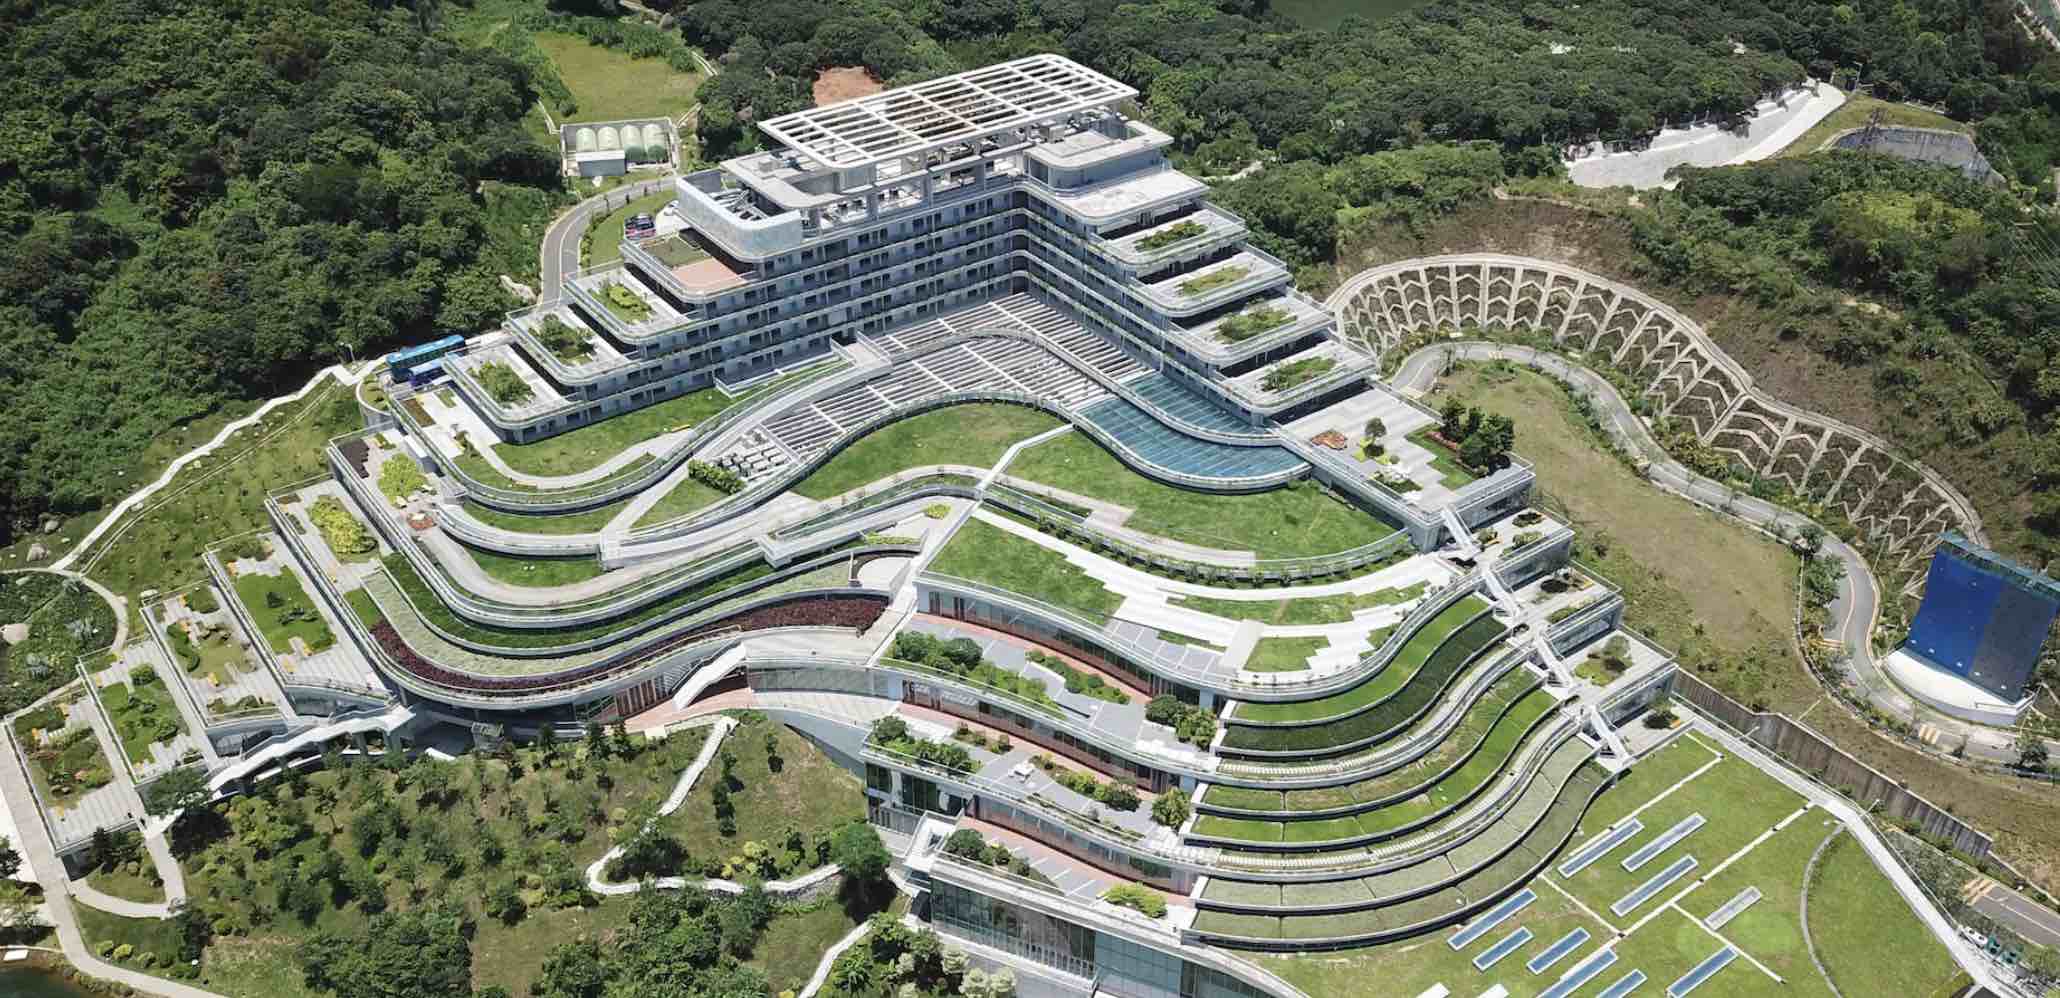 La banque nationale de gènes du gouvernement chinois. Elle est administrée par BGI et couvre 47 500 mètres carrés.<br />PHOTO : GETTY IMAGES